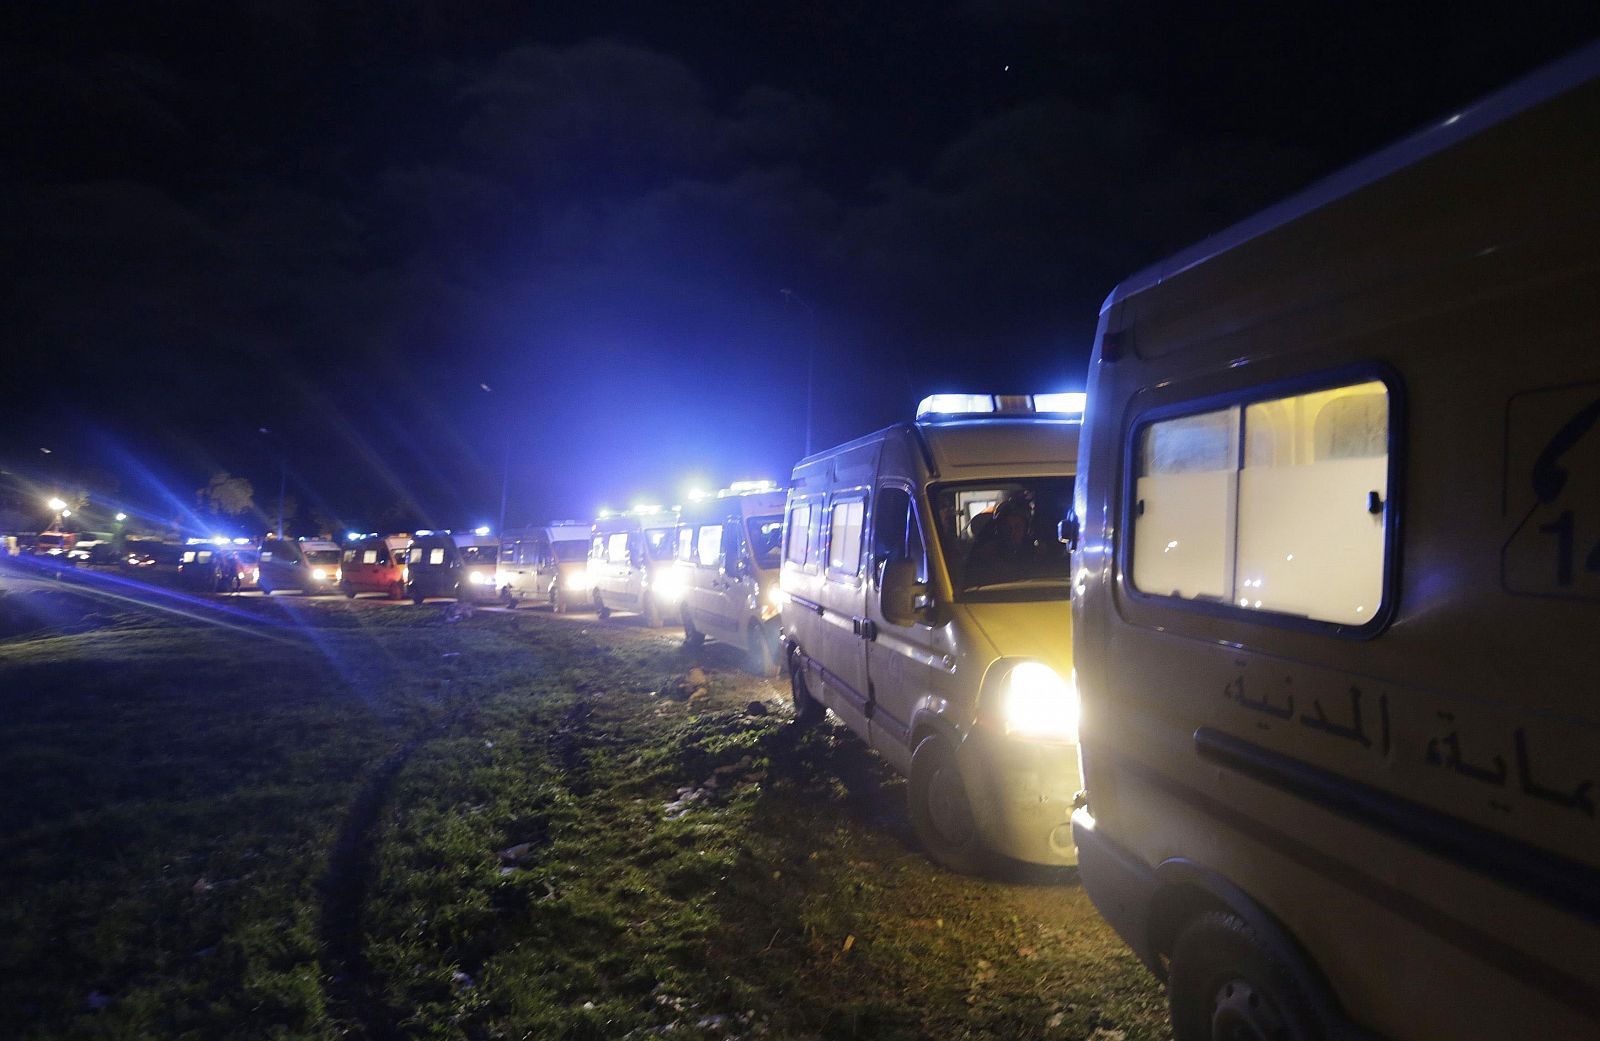 Varias ambulancias trasladan a las víctimas tras el accidente de avión en Argelia